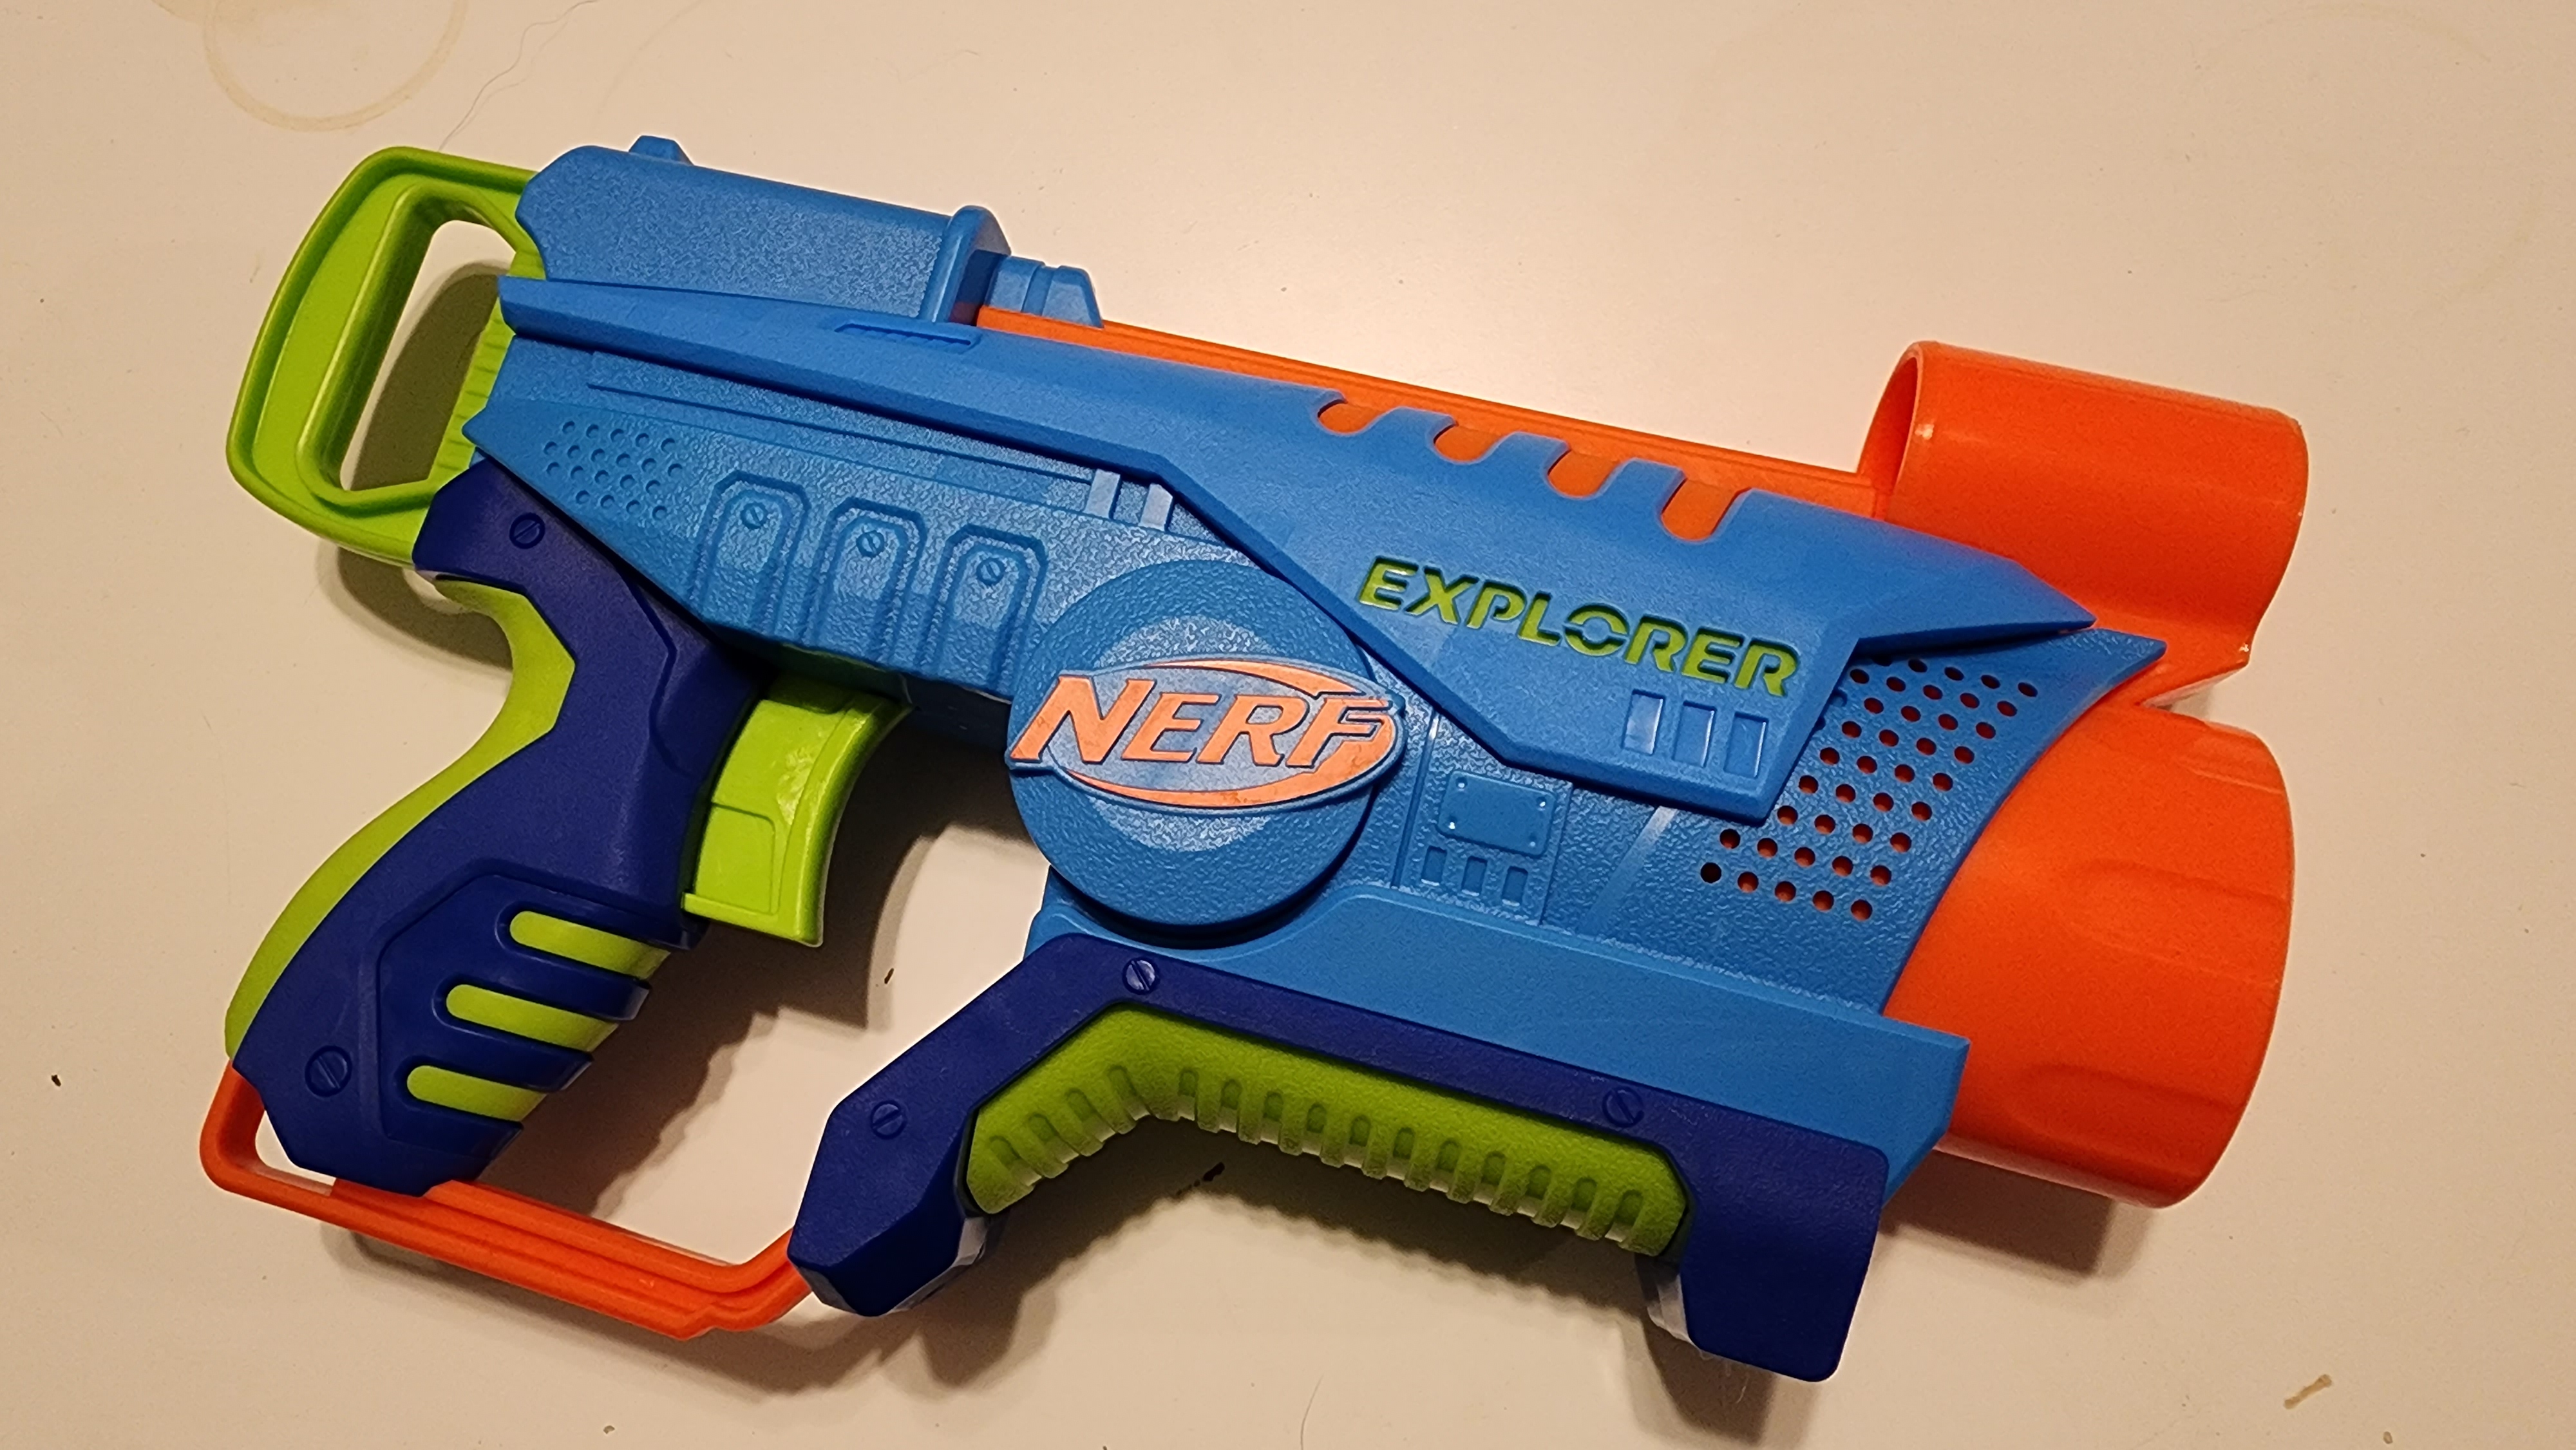 Nerf Elite Junior Explorer Blaster : Target